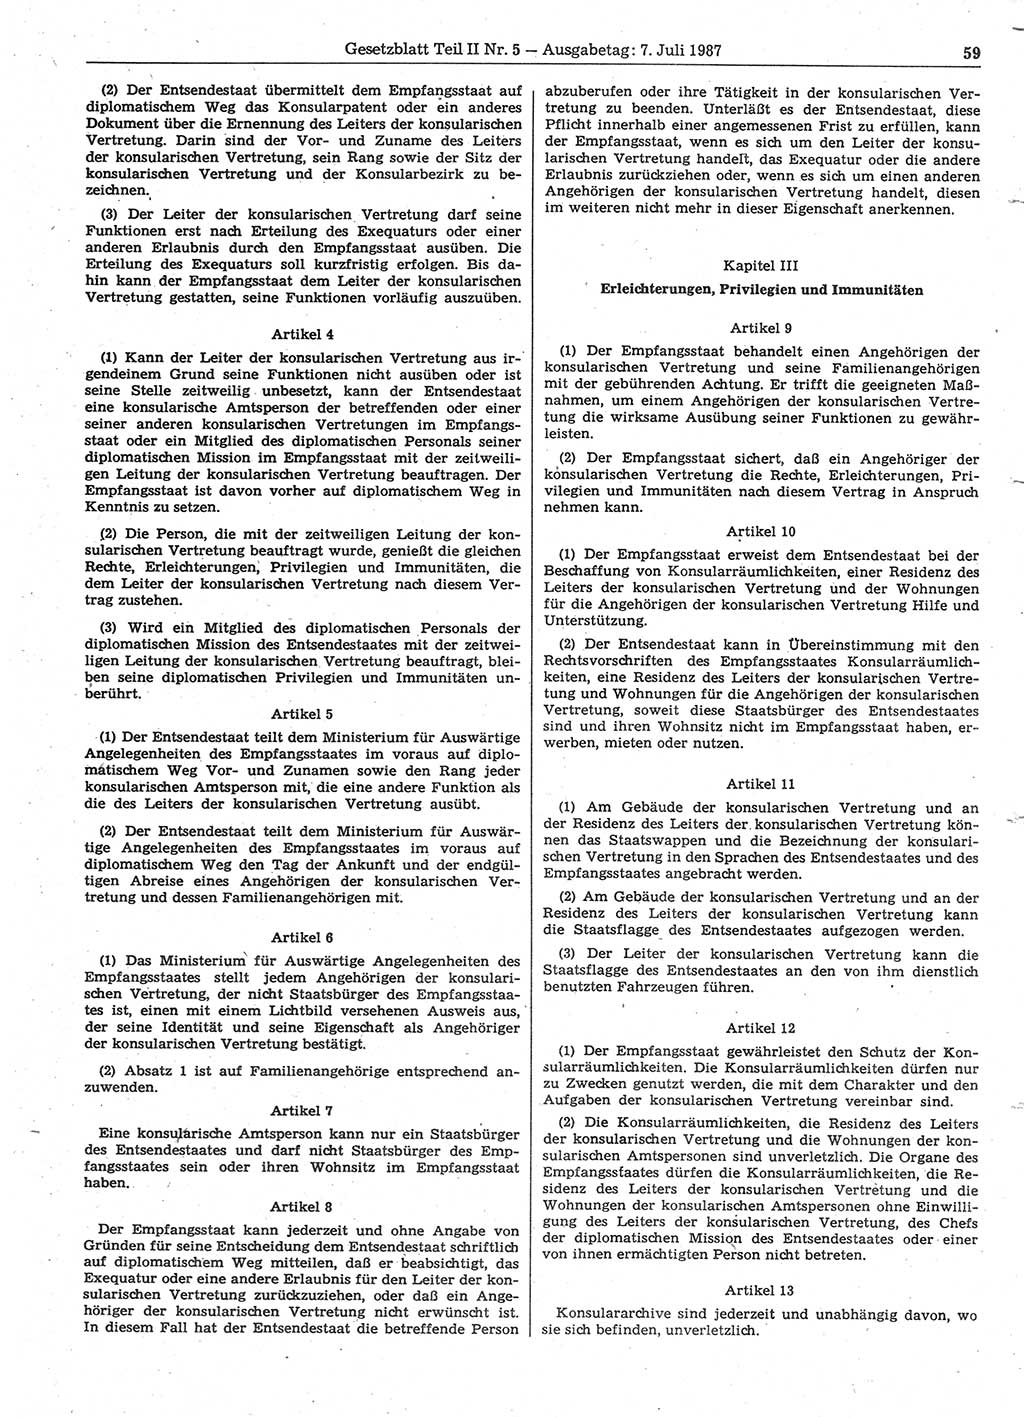 Gesetzblatt (GBl.) der Deutschen Demokratischen Republik (DDR) Teil ⅠⅠ 1987, Seite 59 (GBl. DDR ⅠⅠ 1987, S. 59)